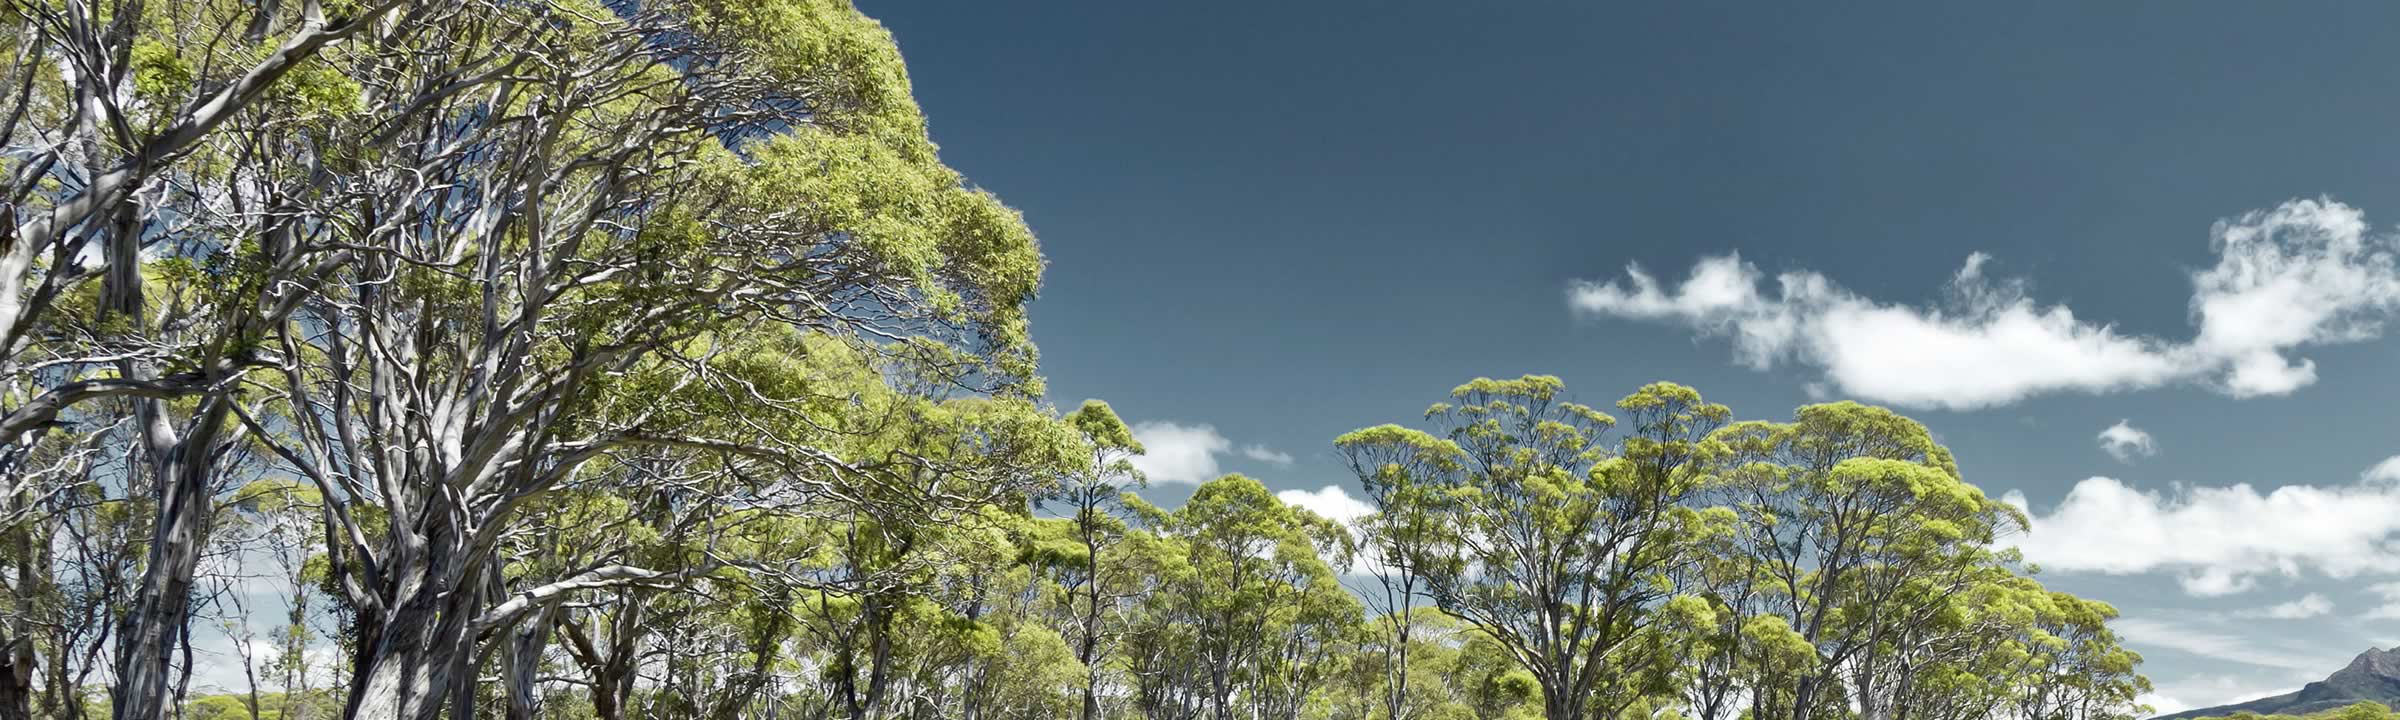 Tasmanian trees.